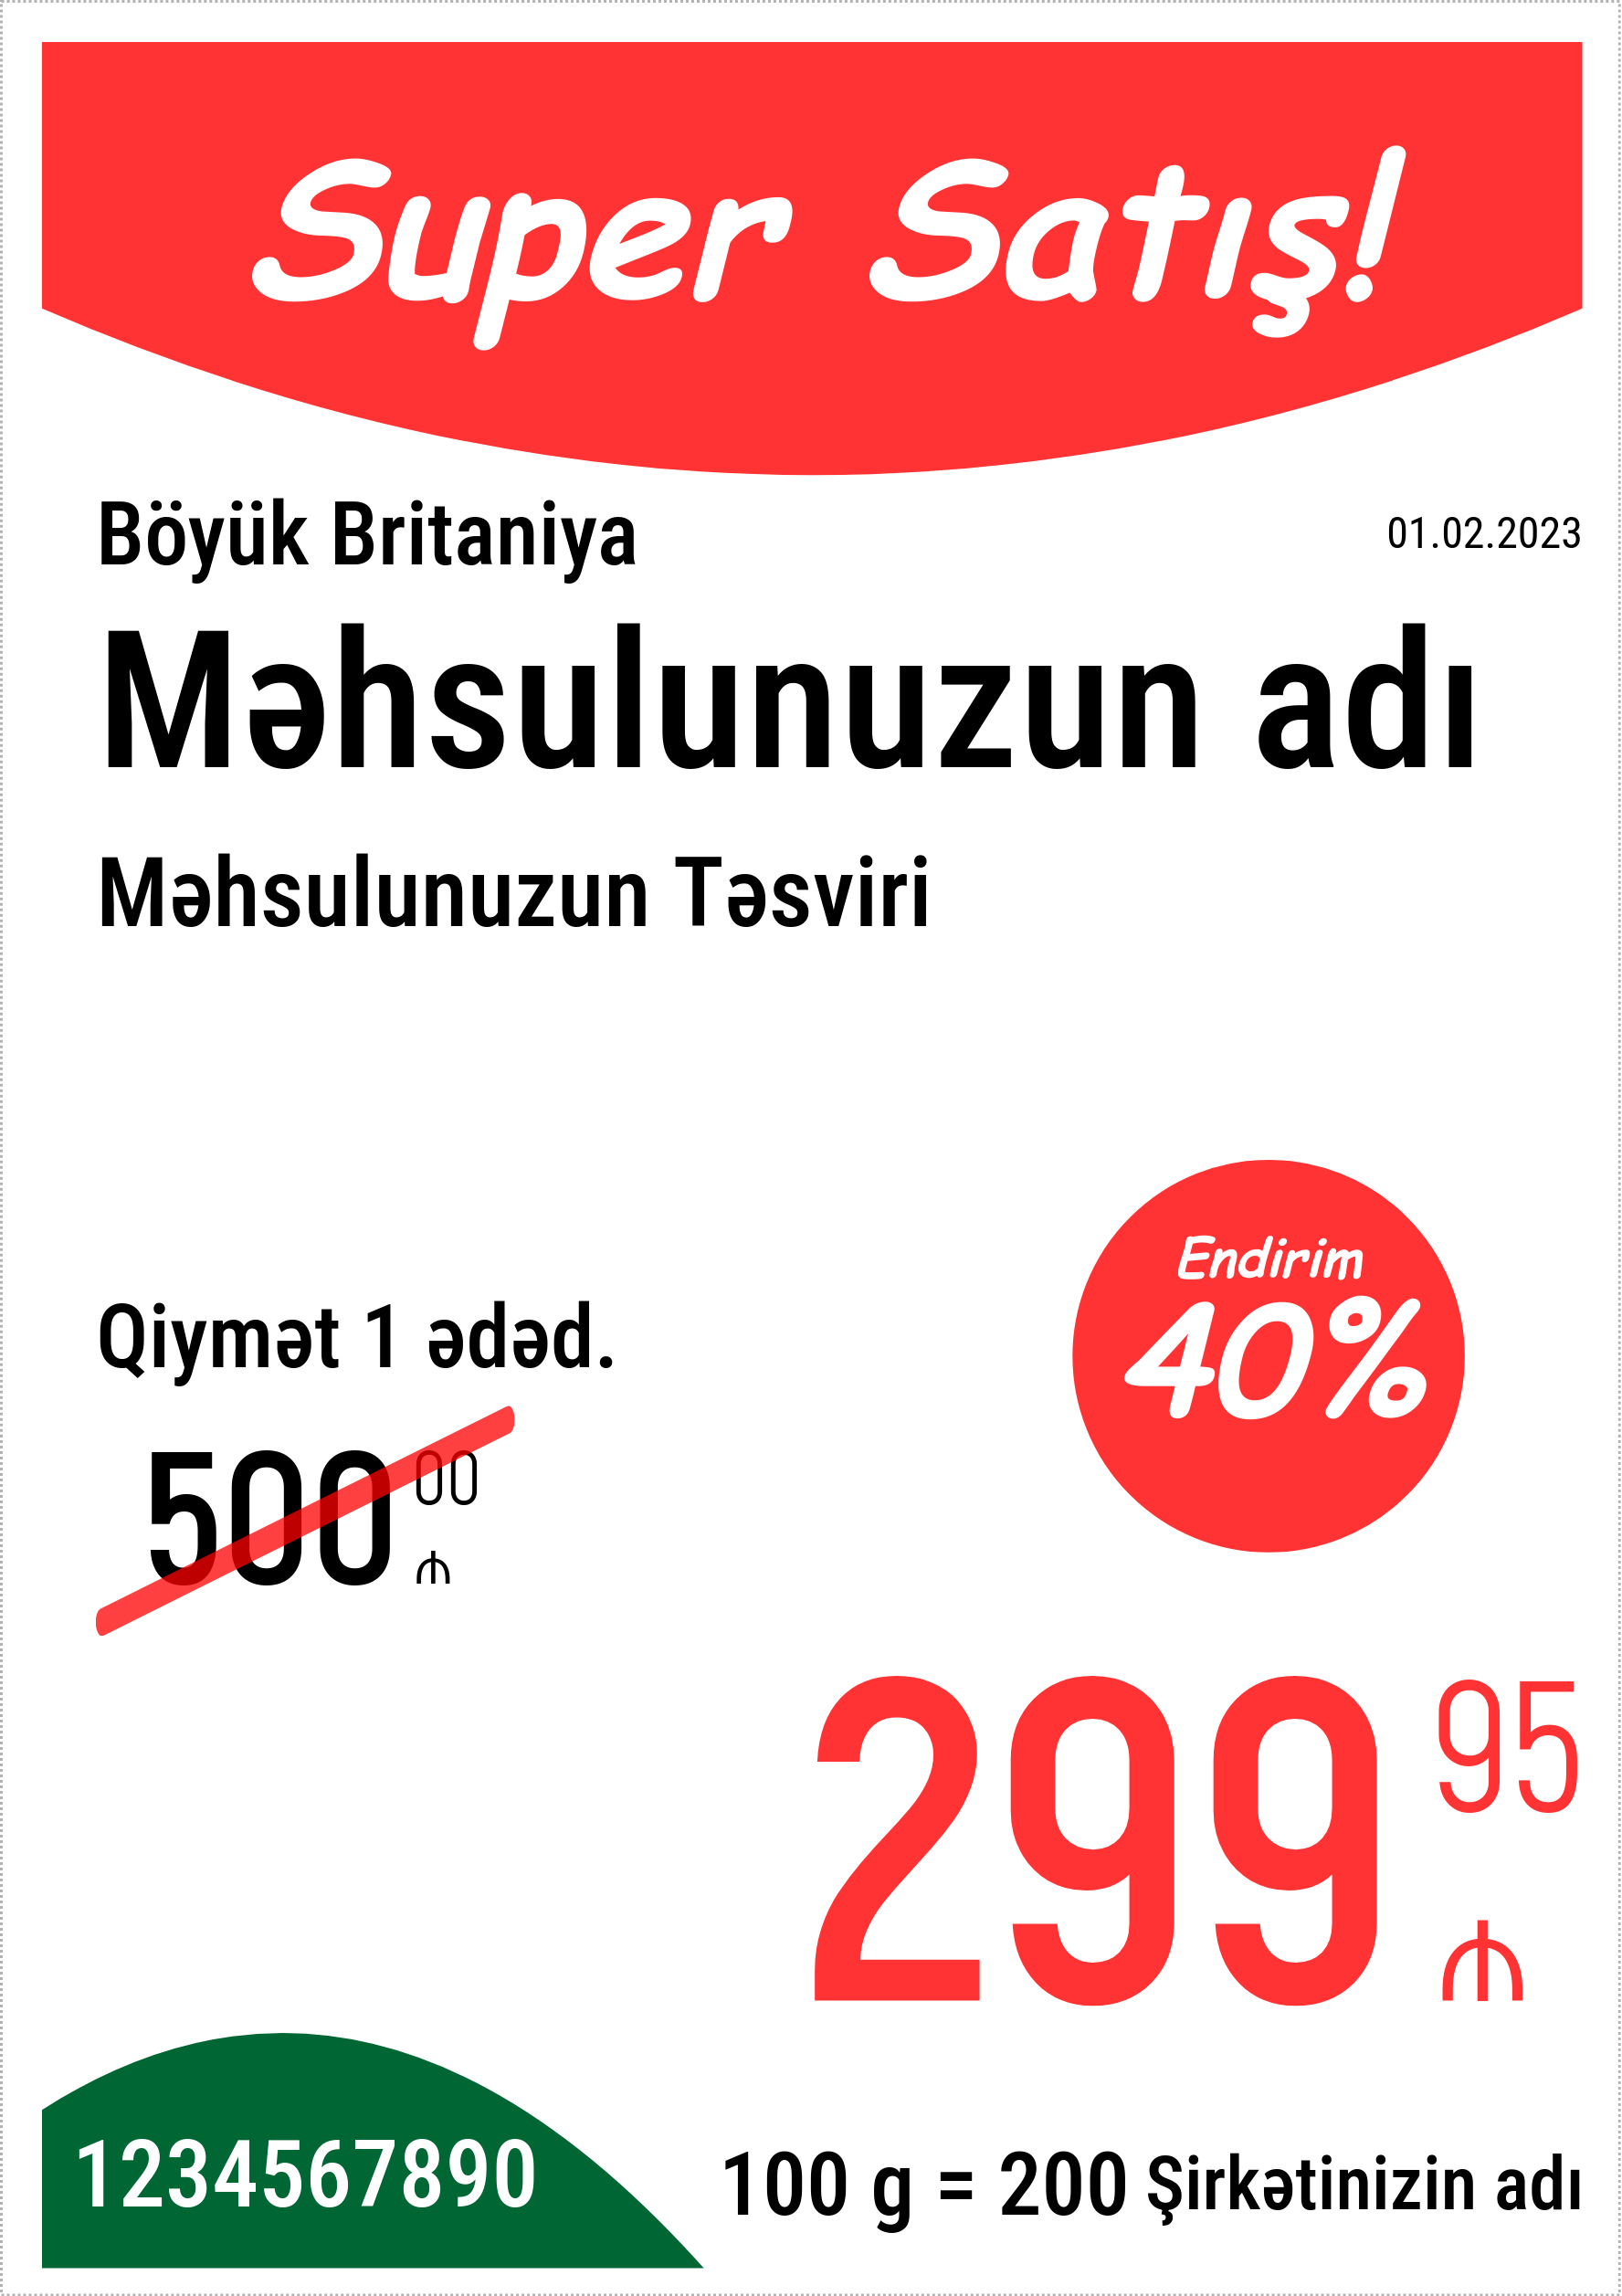 Qiymət etiketi Orijinal / Şaquli / A5 (A4 vərəqinin yarısı) / Reklam